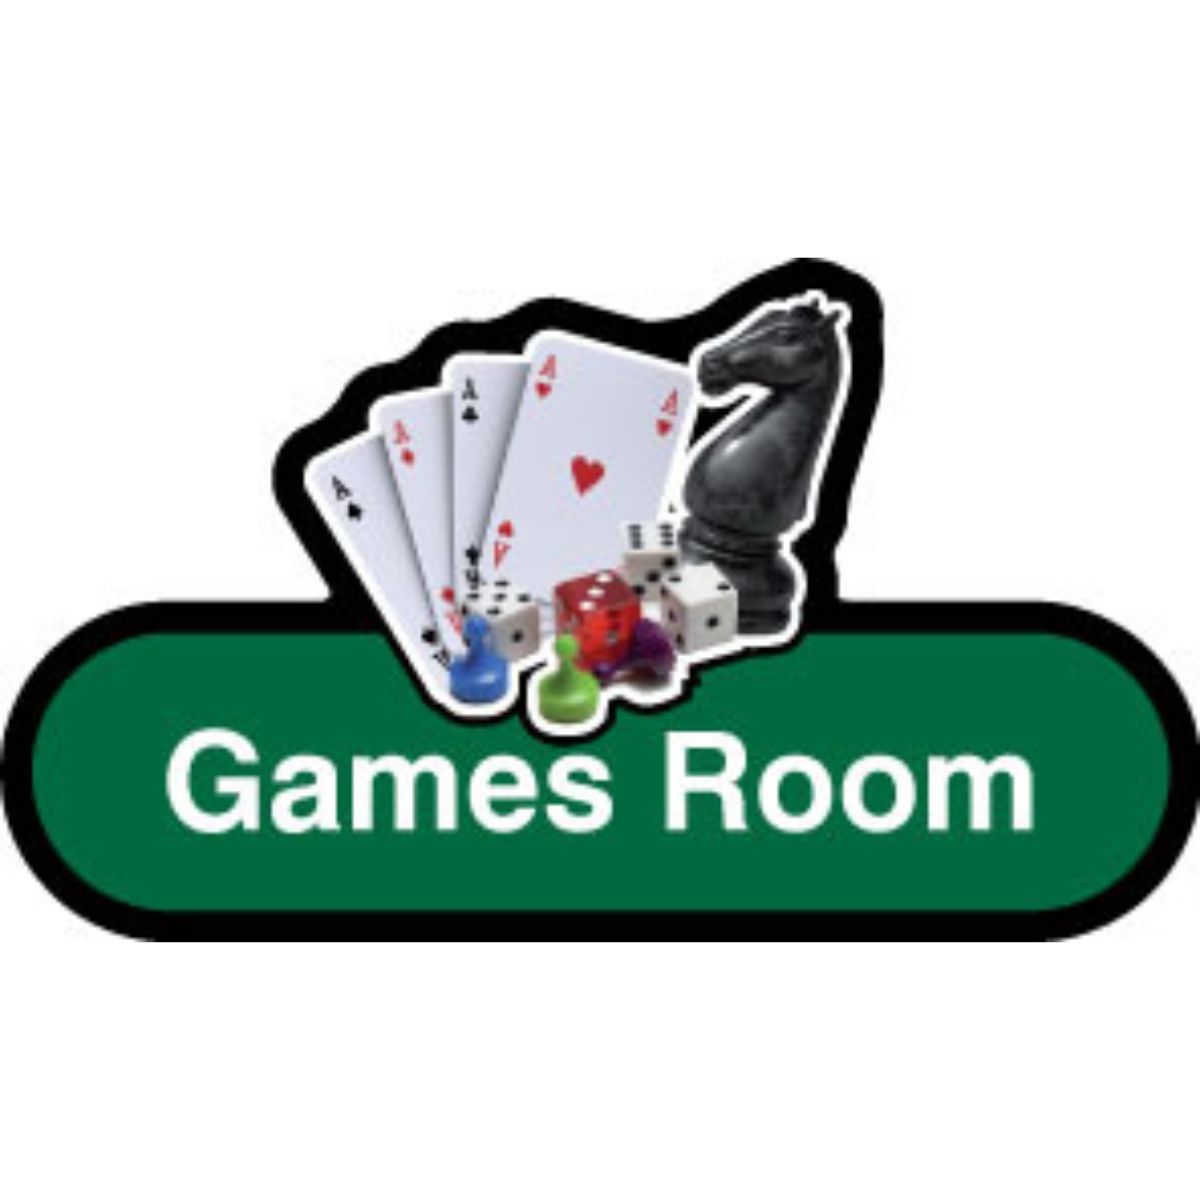 Games Room Sign, 30cm